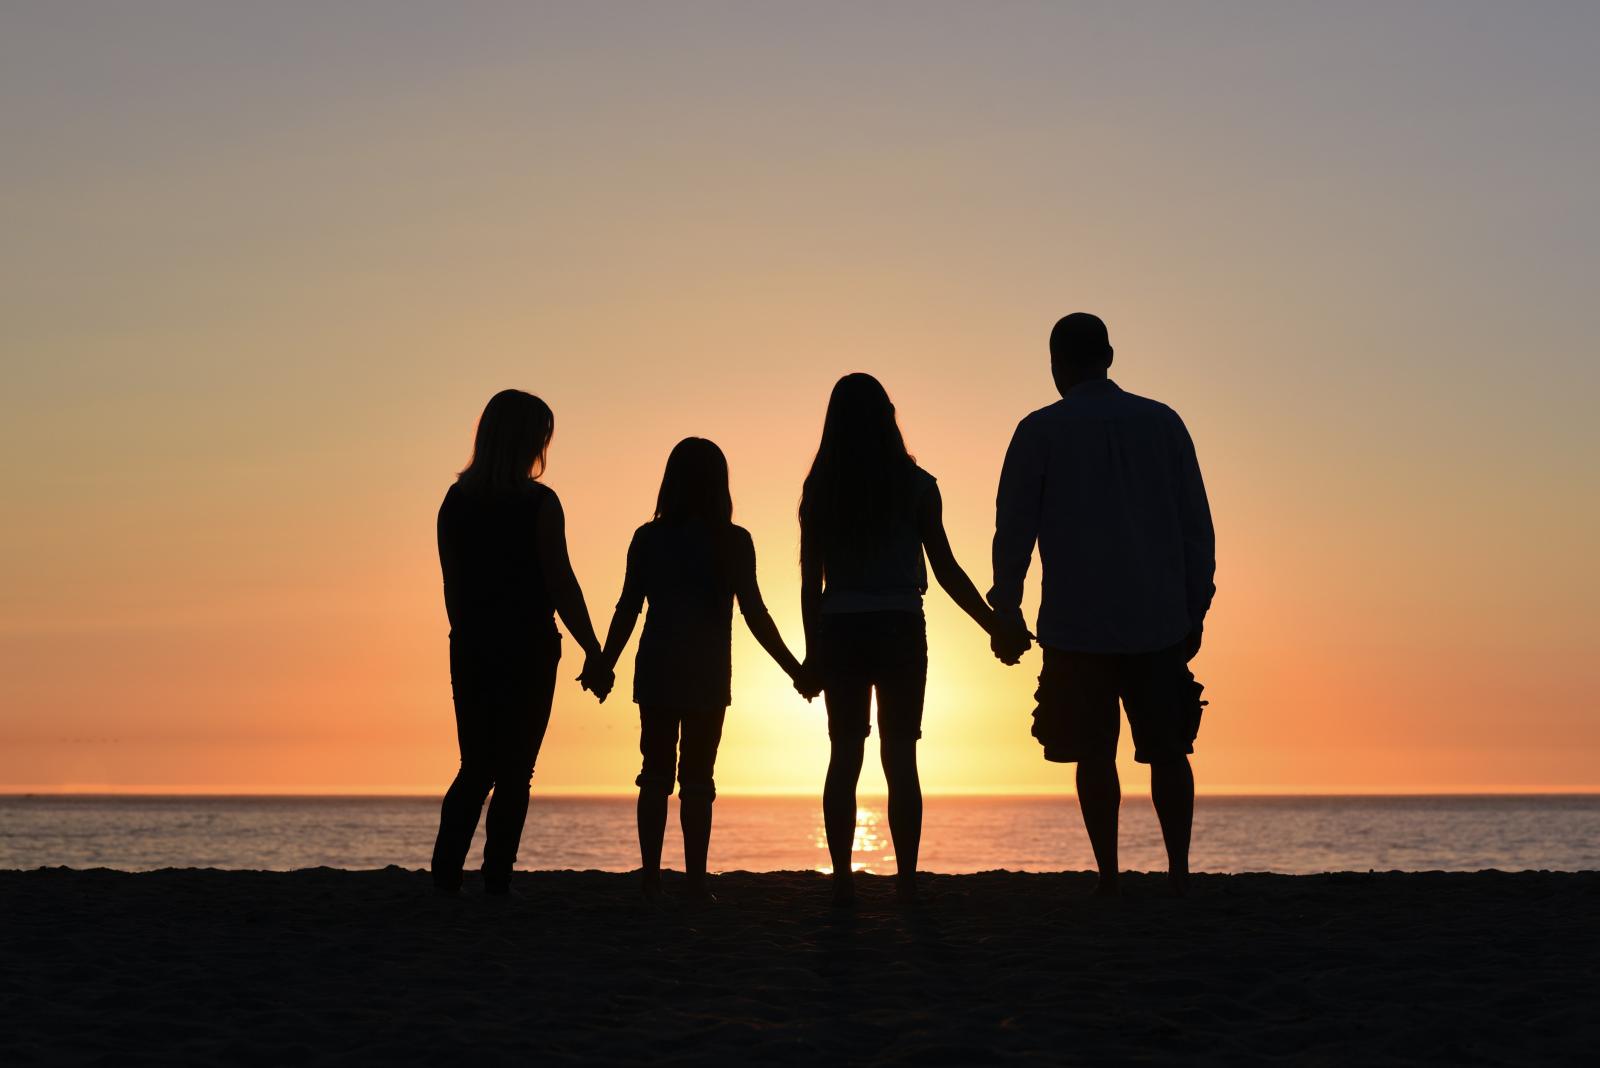 Quattro persone viste di spalle (una donna, un uomo, due ragazze) si tengono per mano davanti al mare e al tramonto